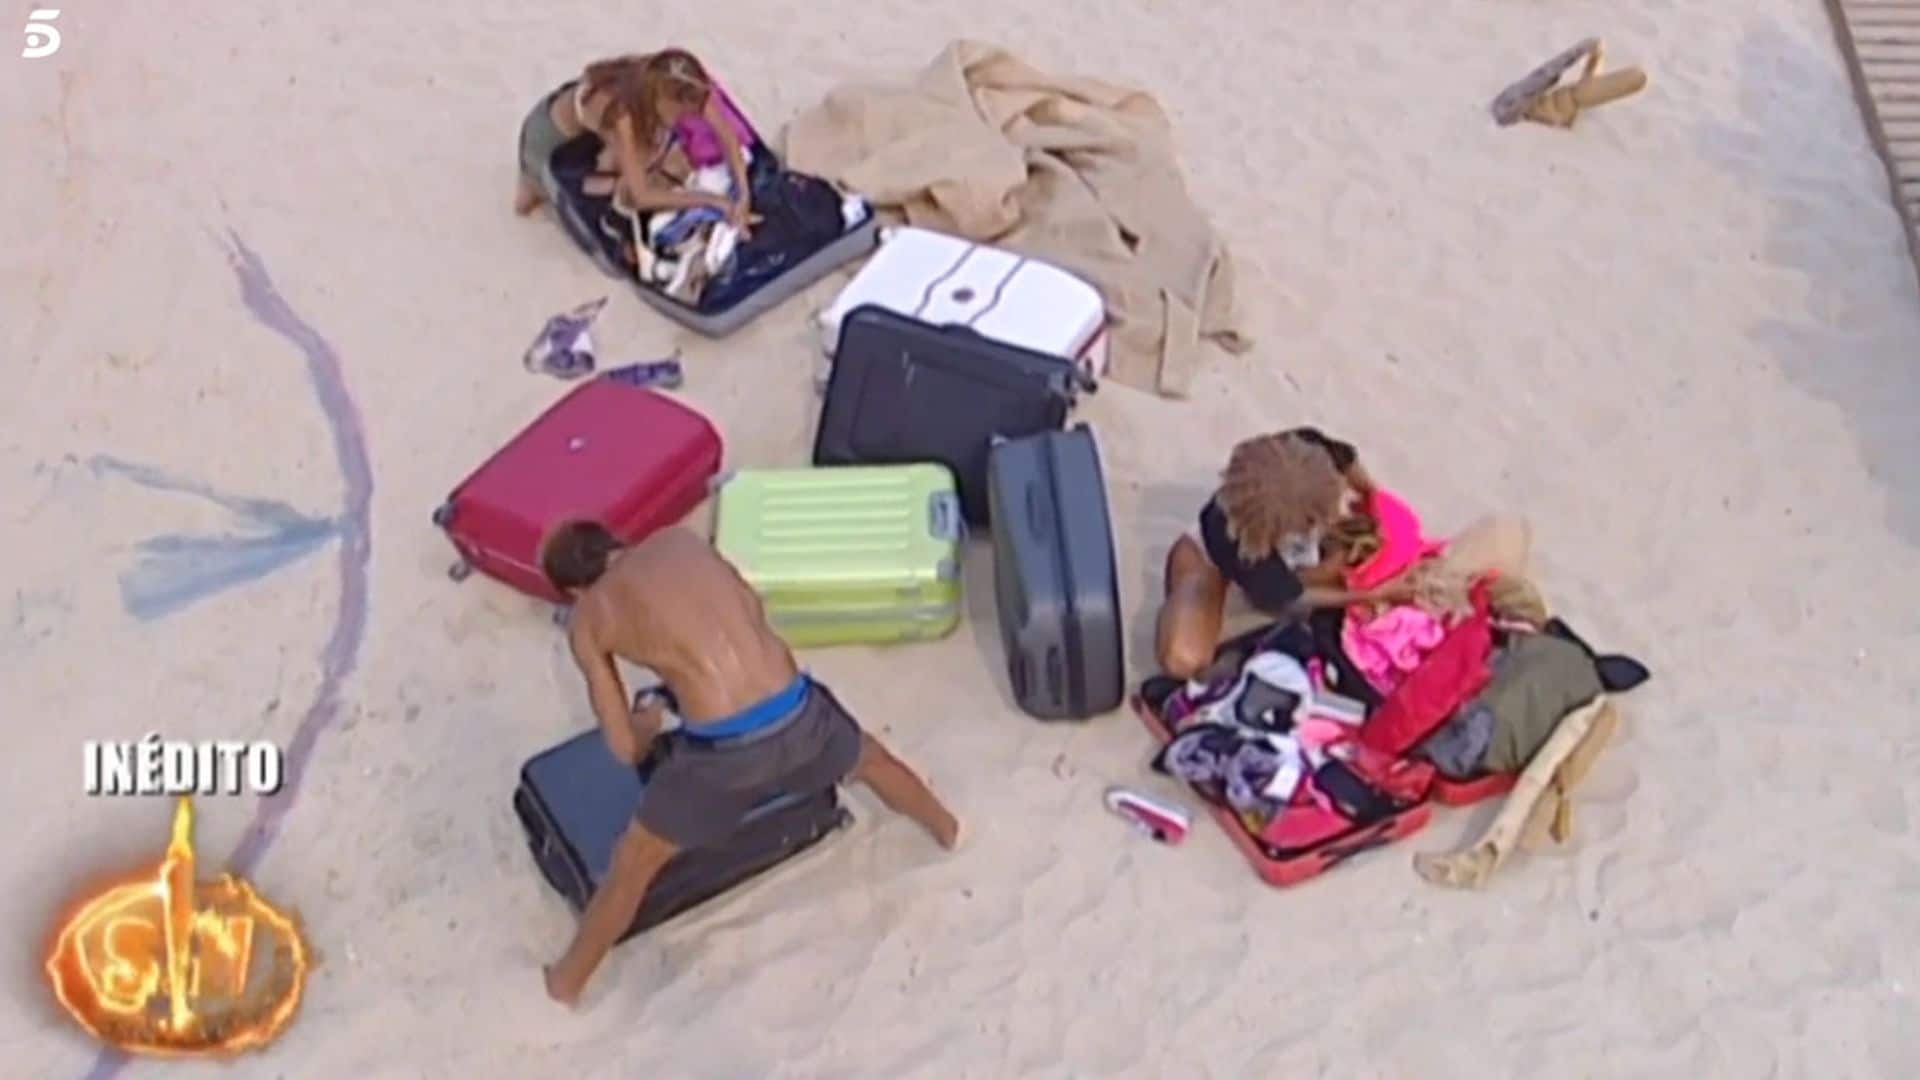 Elena, Yiya y Hugo rescatan tres objetos personales de su maleta